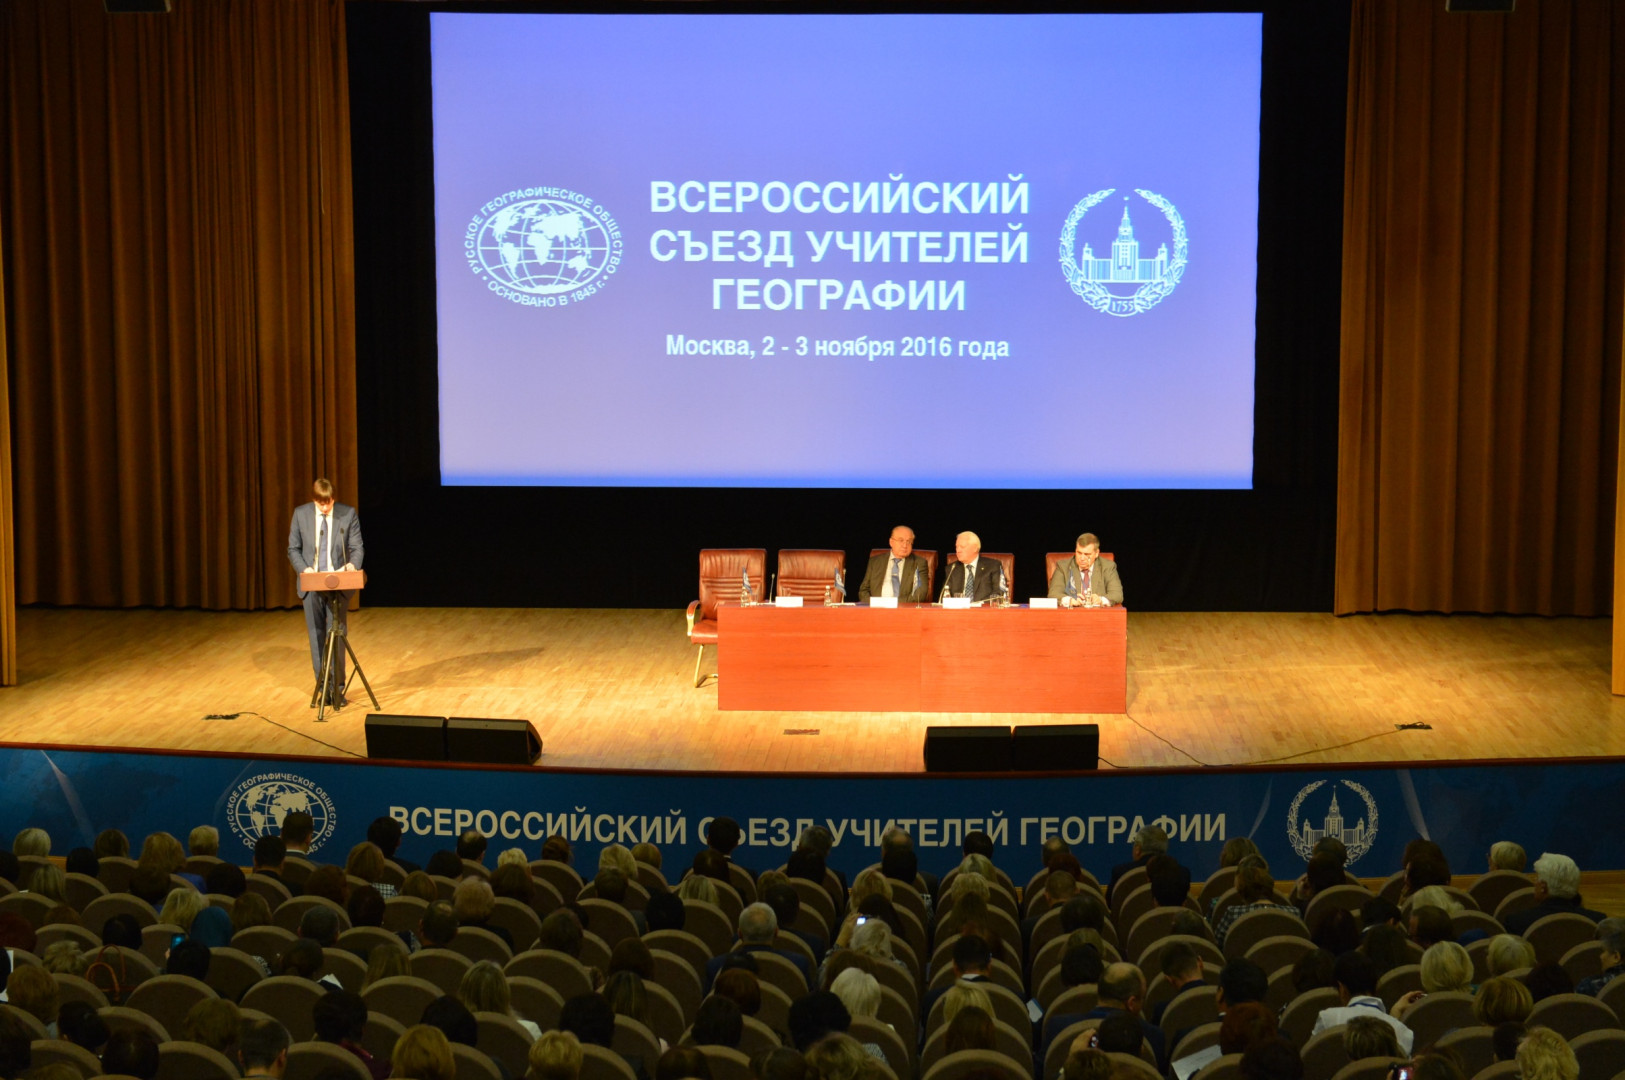 Всероссийский съезд учителей географии. День первый